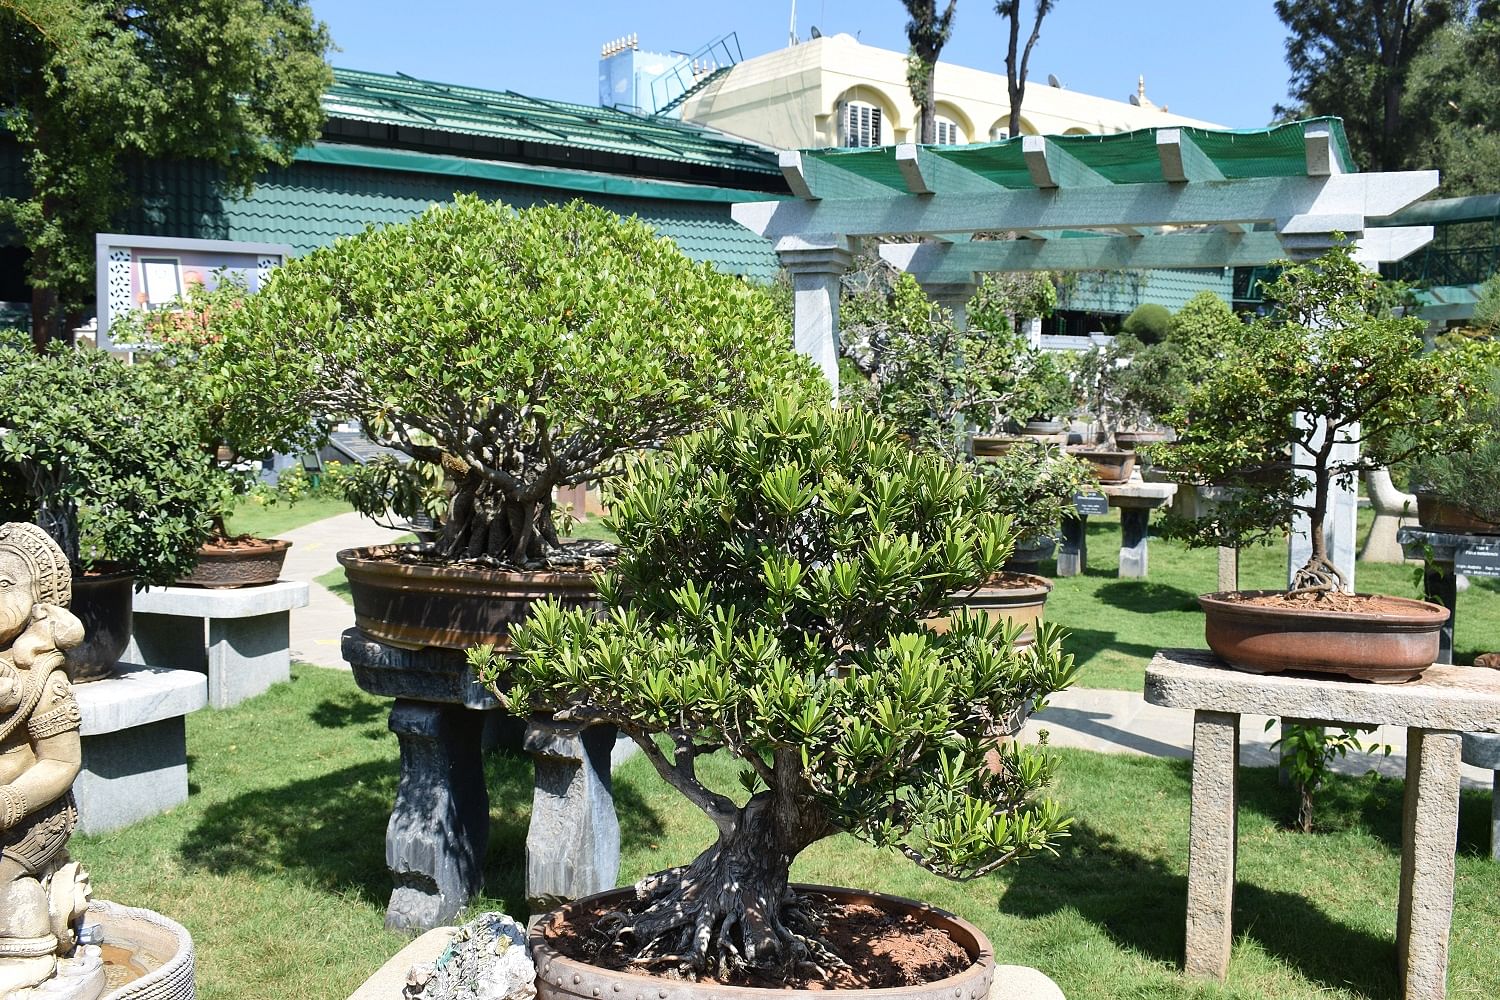 Some of the bonsais on display at the Kishkindha Moolika Bonsai Garden in Mysuru. PHOTO BY AUTHOR